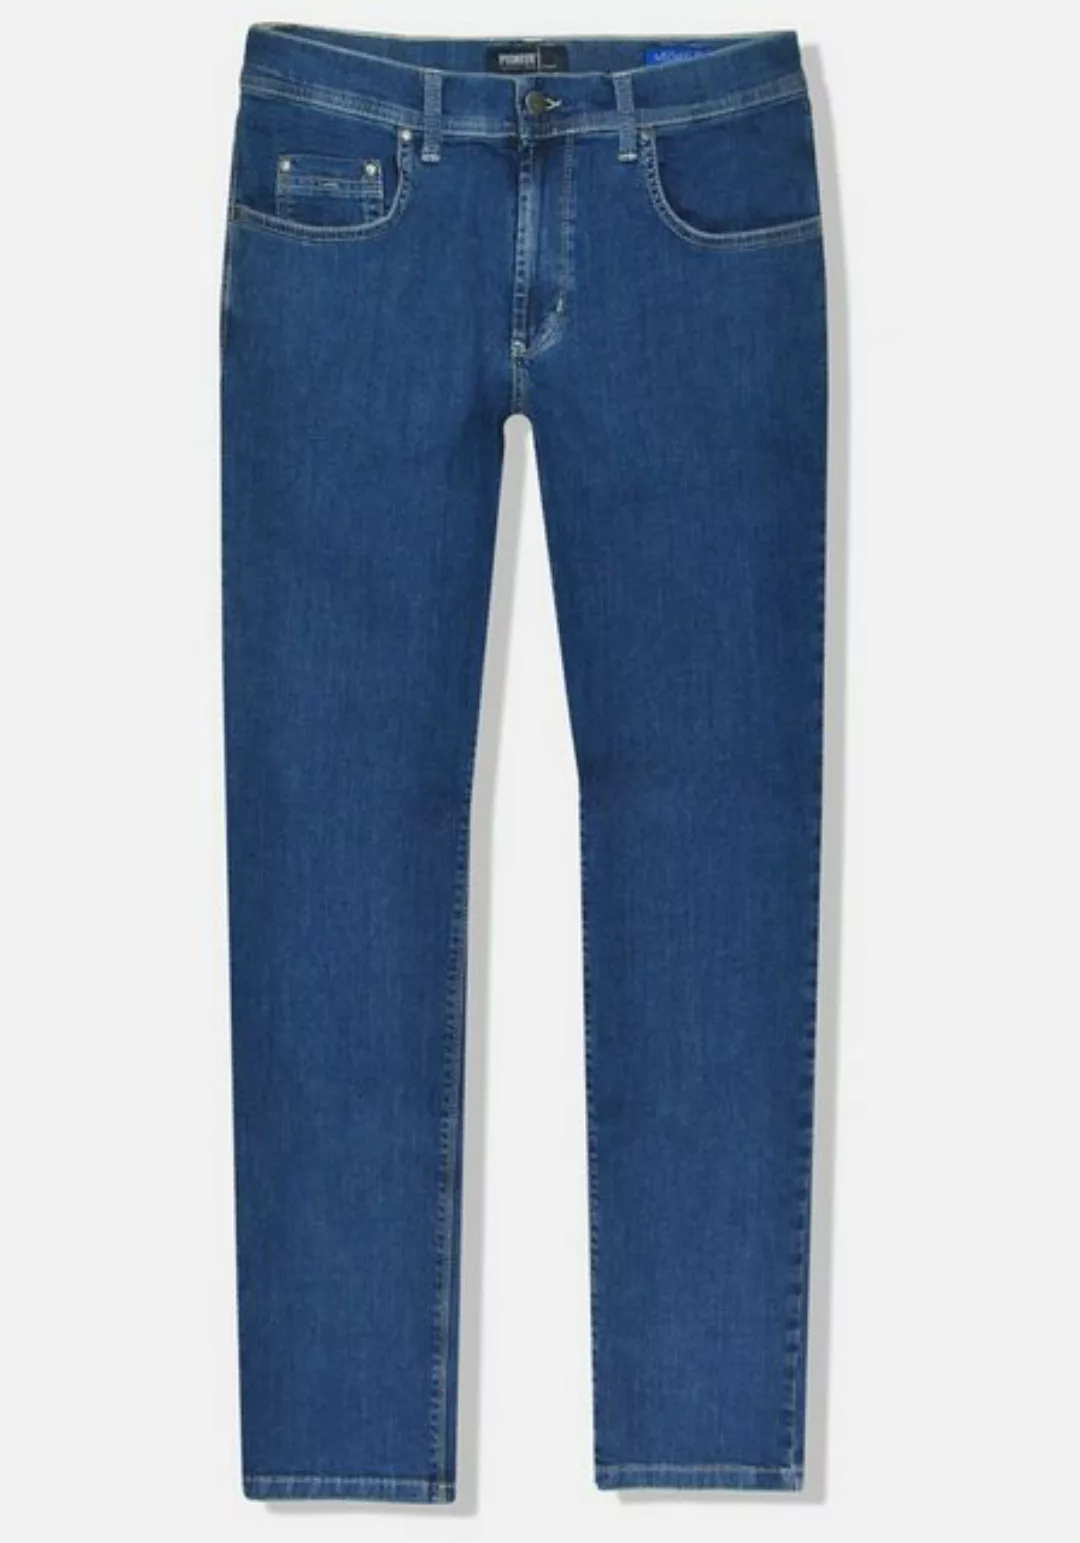 Pioneer Jeans Rando Megaflex Regular Fit darkstone günstig online kaufen